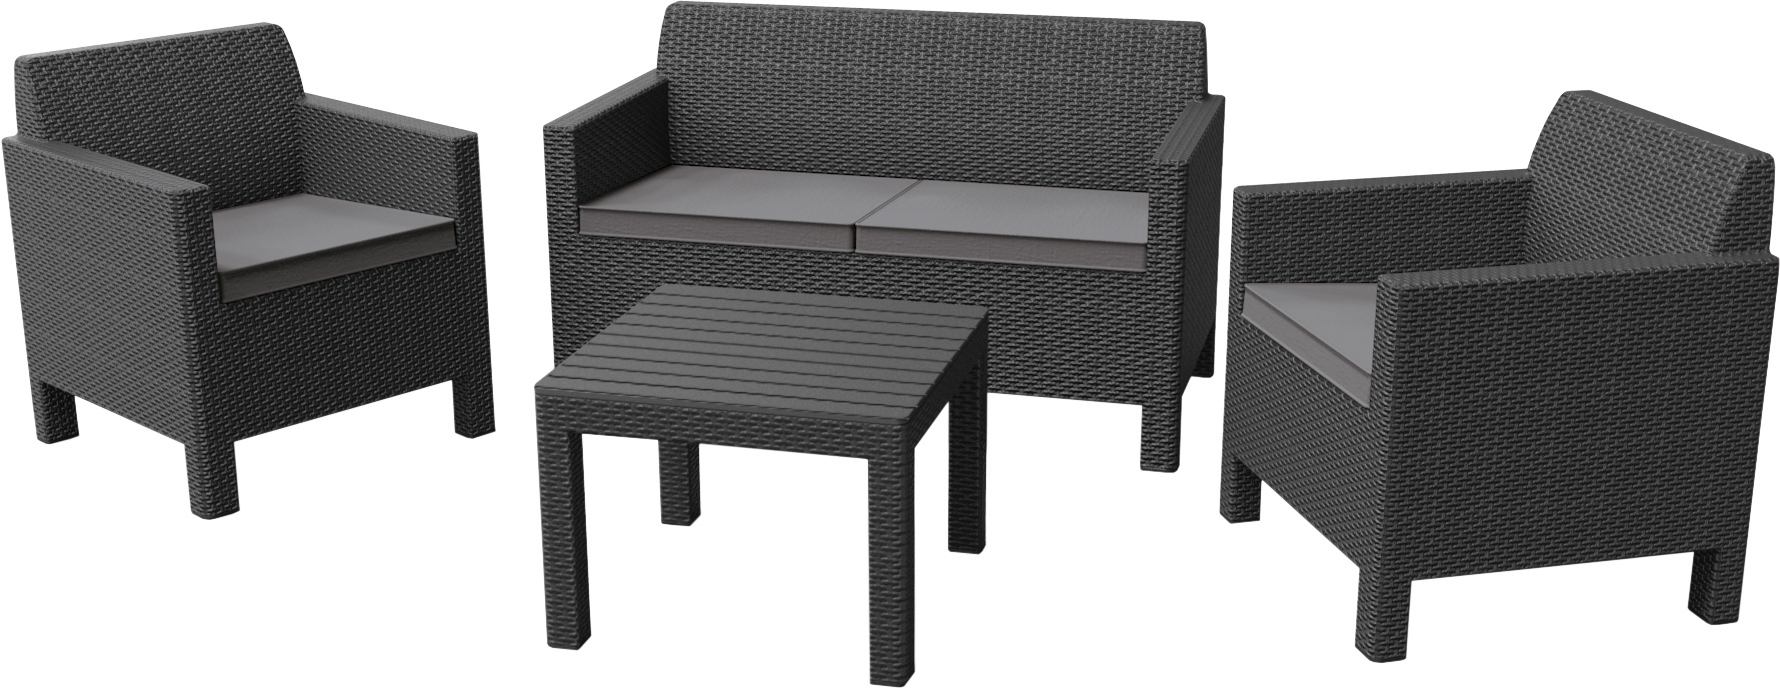 Комплект Орландо со столиком (Orlando set with small table) серый